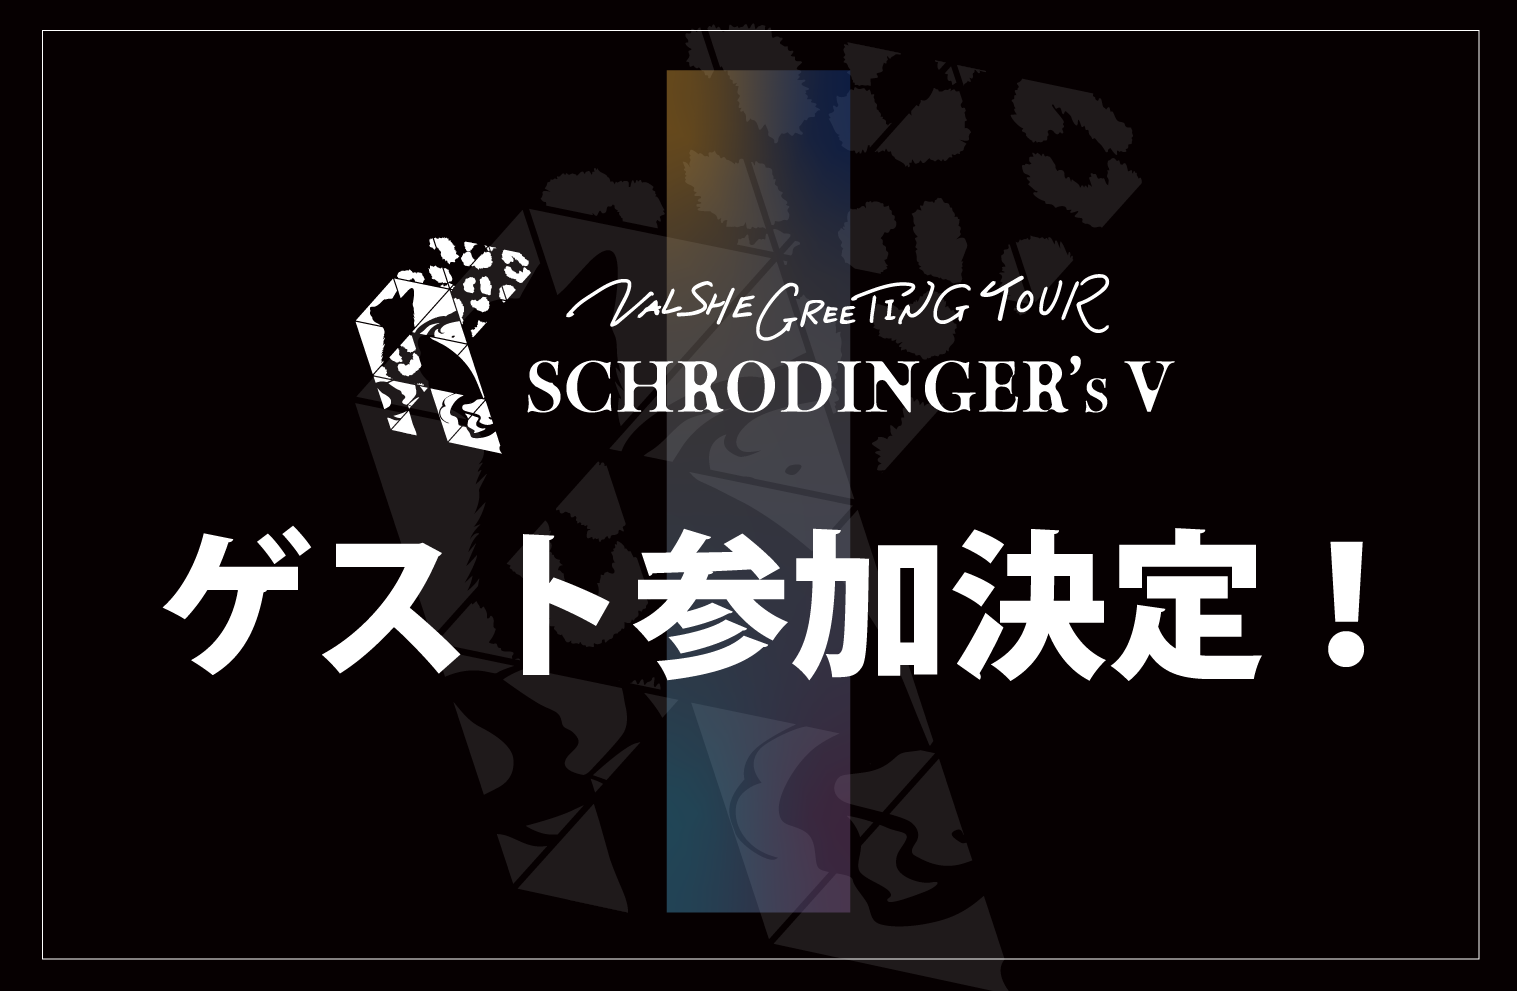 【1/26更新】「VALSHE GREETING TOUR「SCHRODINGER’s V」」ゲスト参加決定！